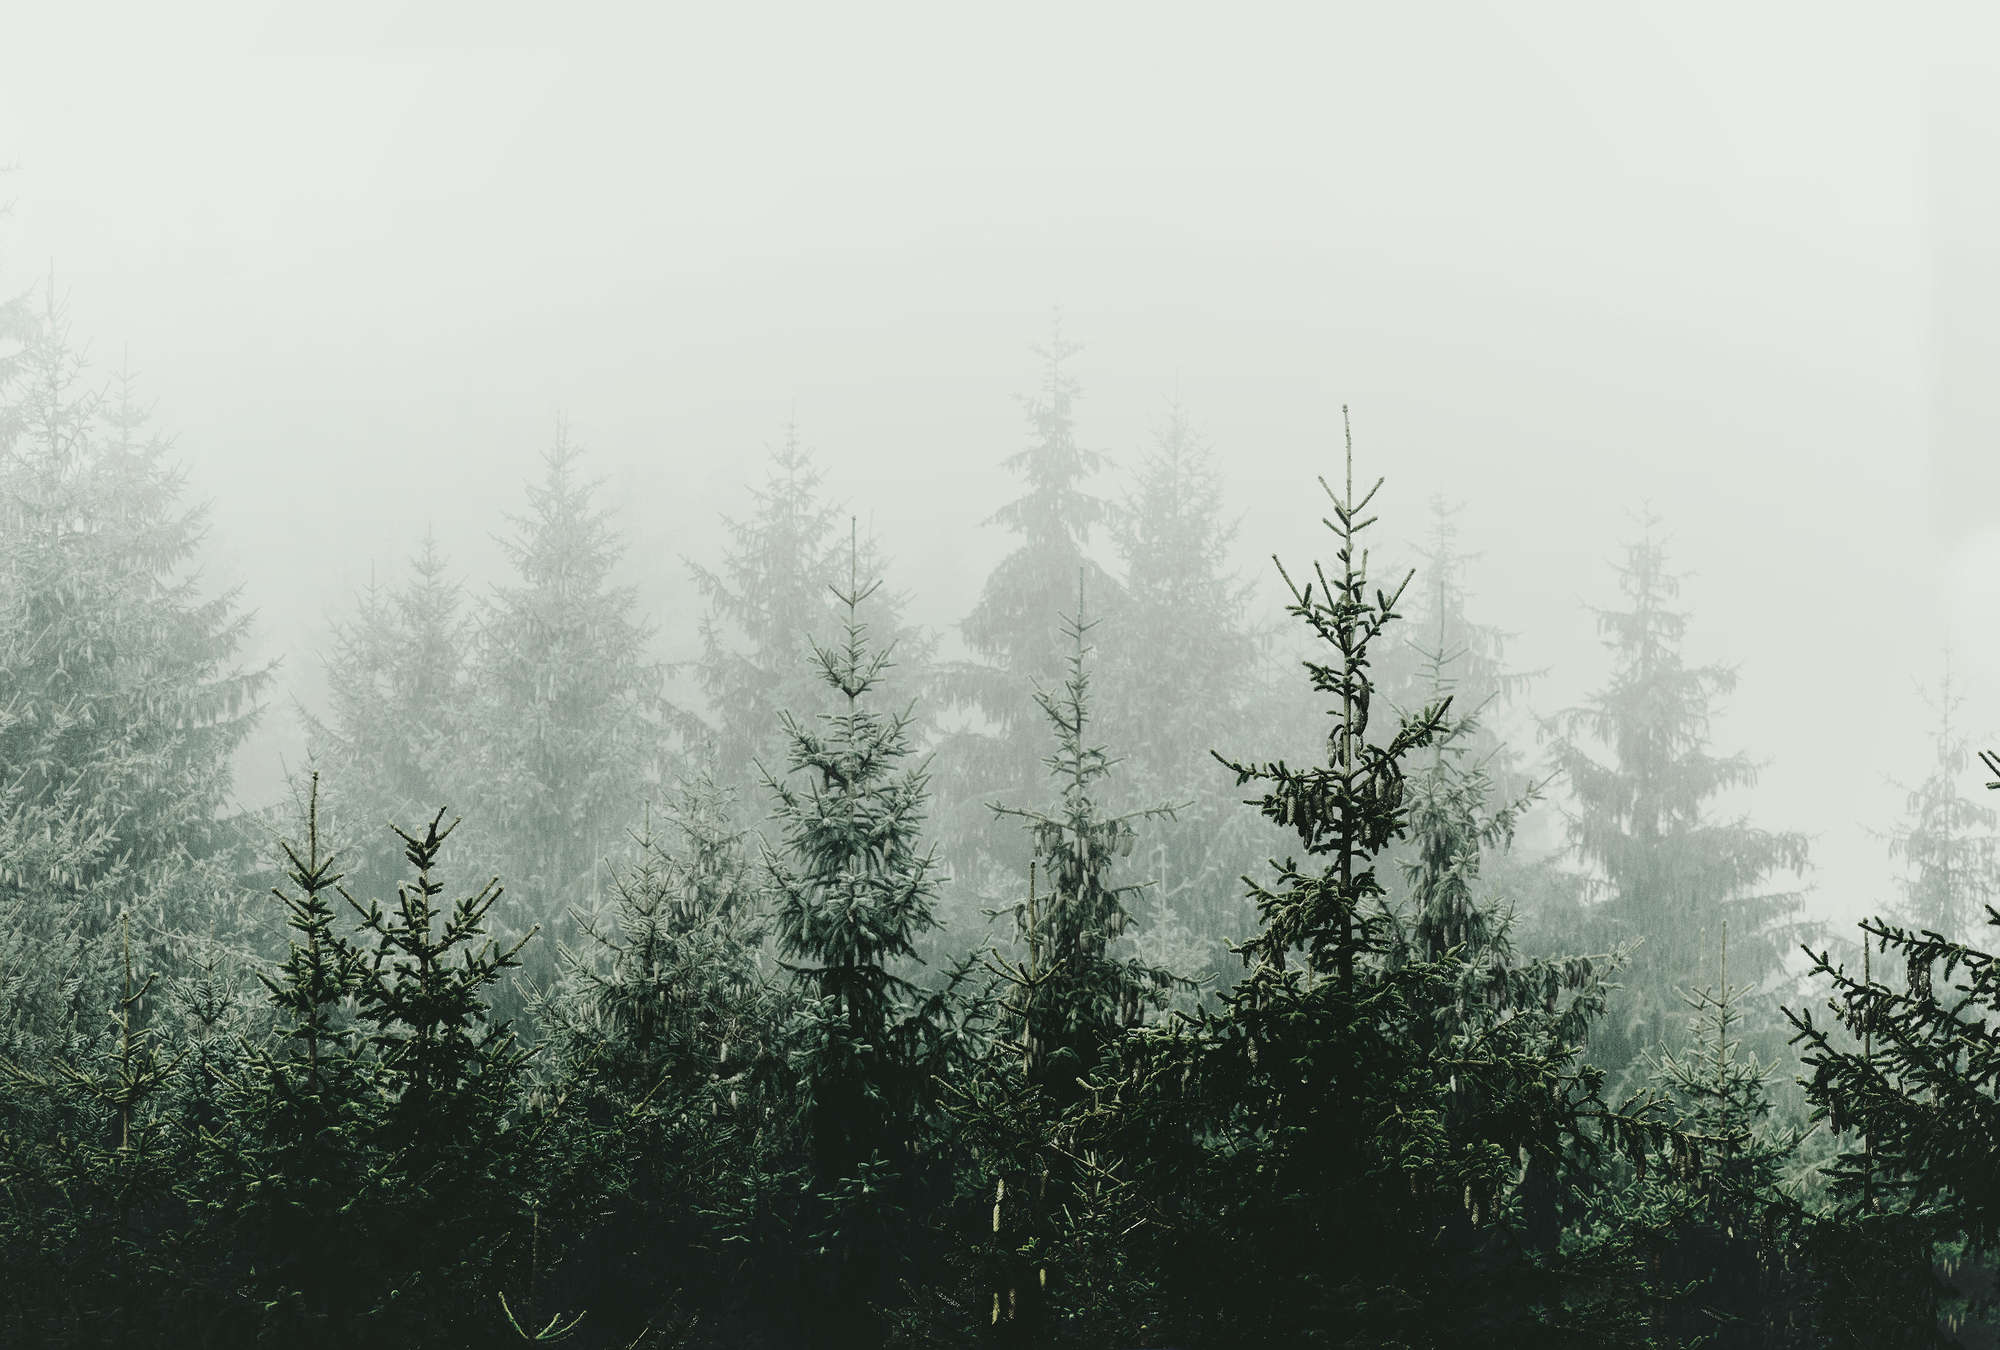             Papier peint forêt dans le brouillard sapins à feuilles persistantes
        